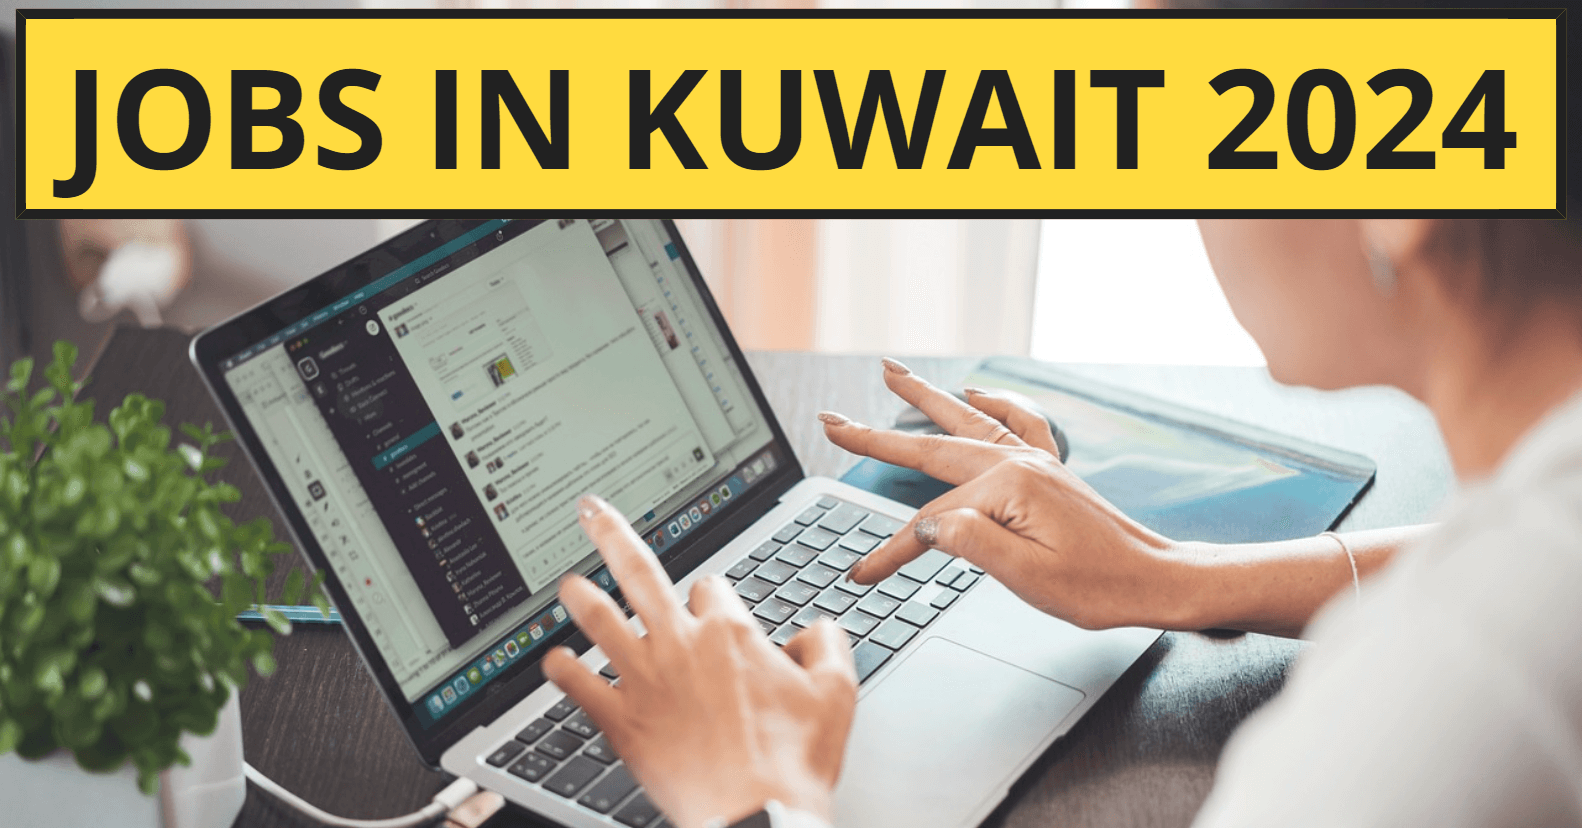 Jobs in Kuwait 2024